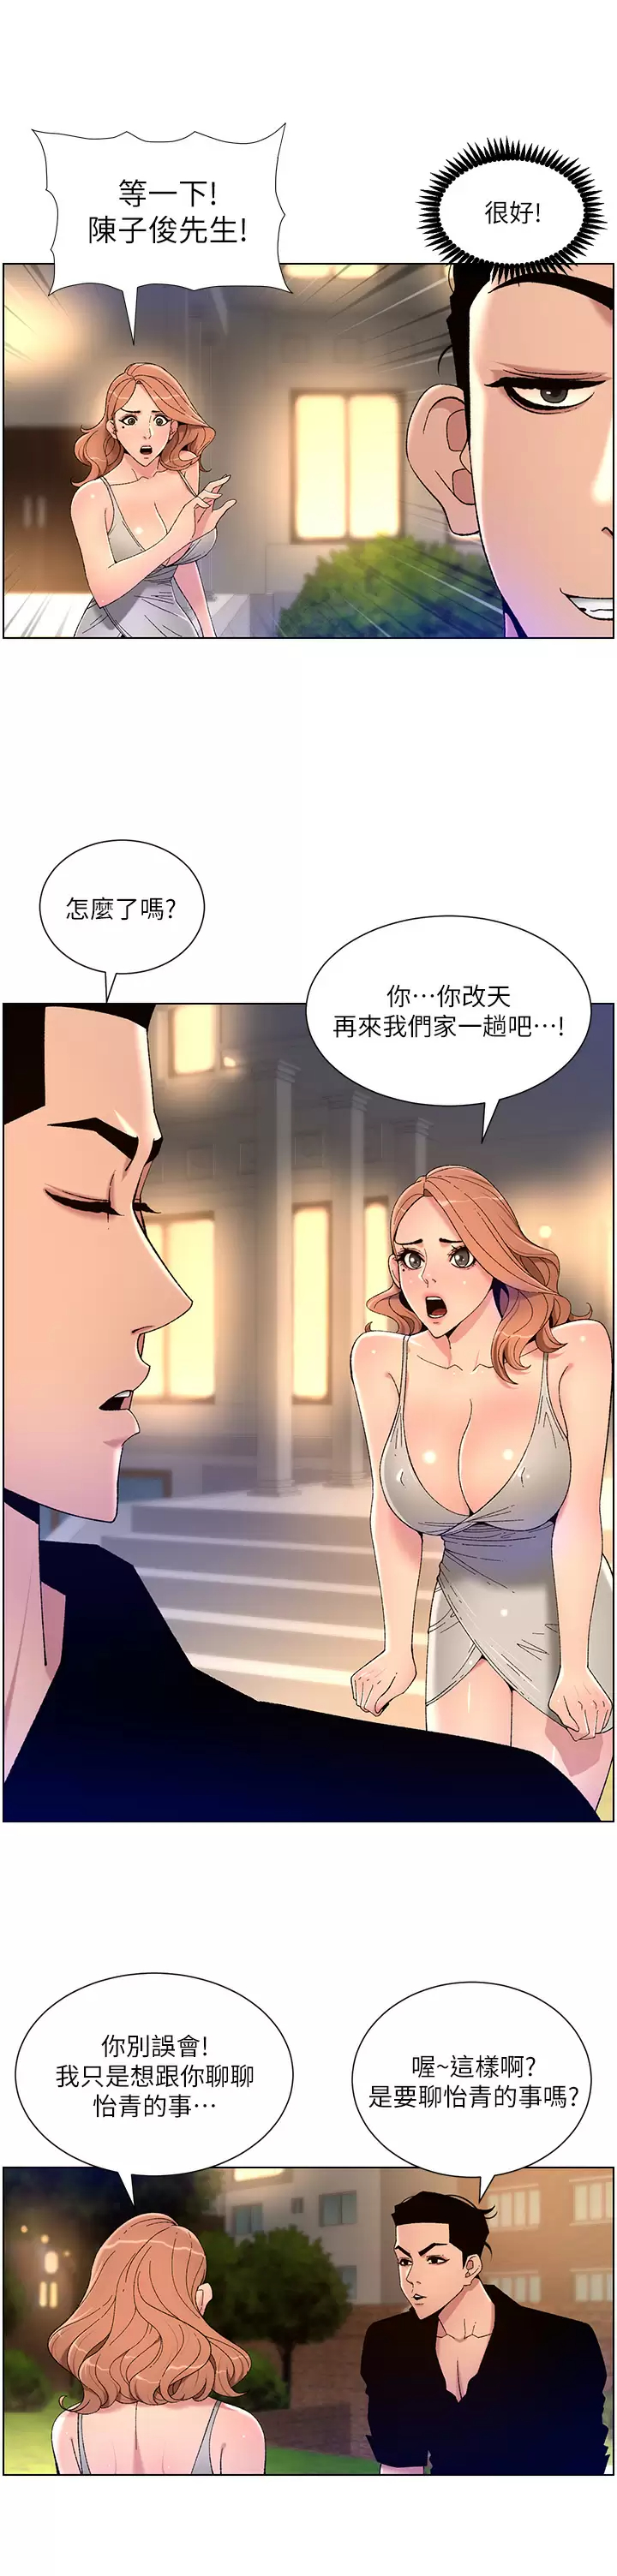 韩国污漫画 帝王App 第31话 好想被他干…! 13